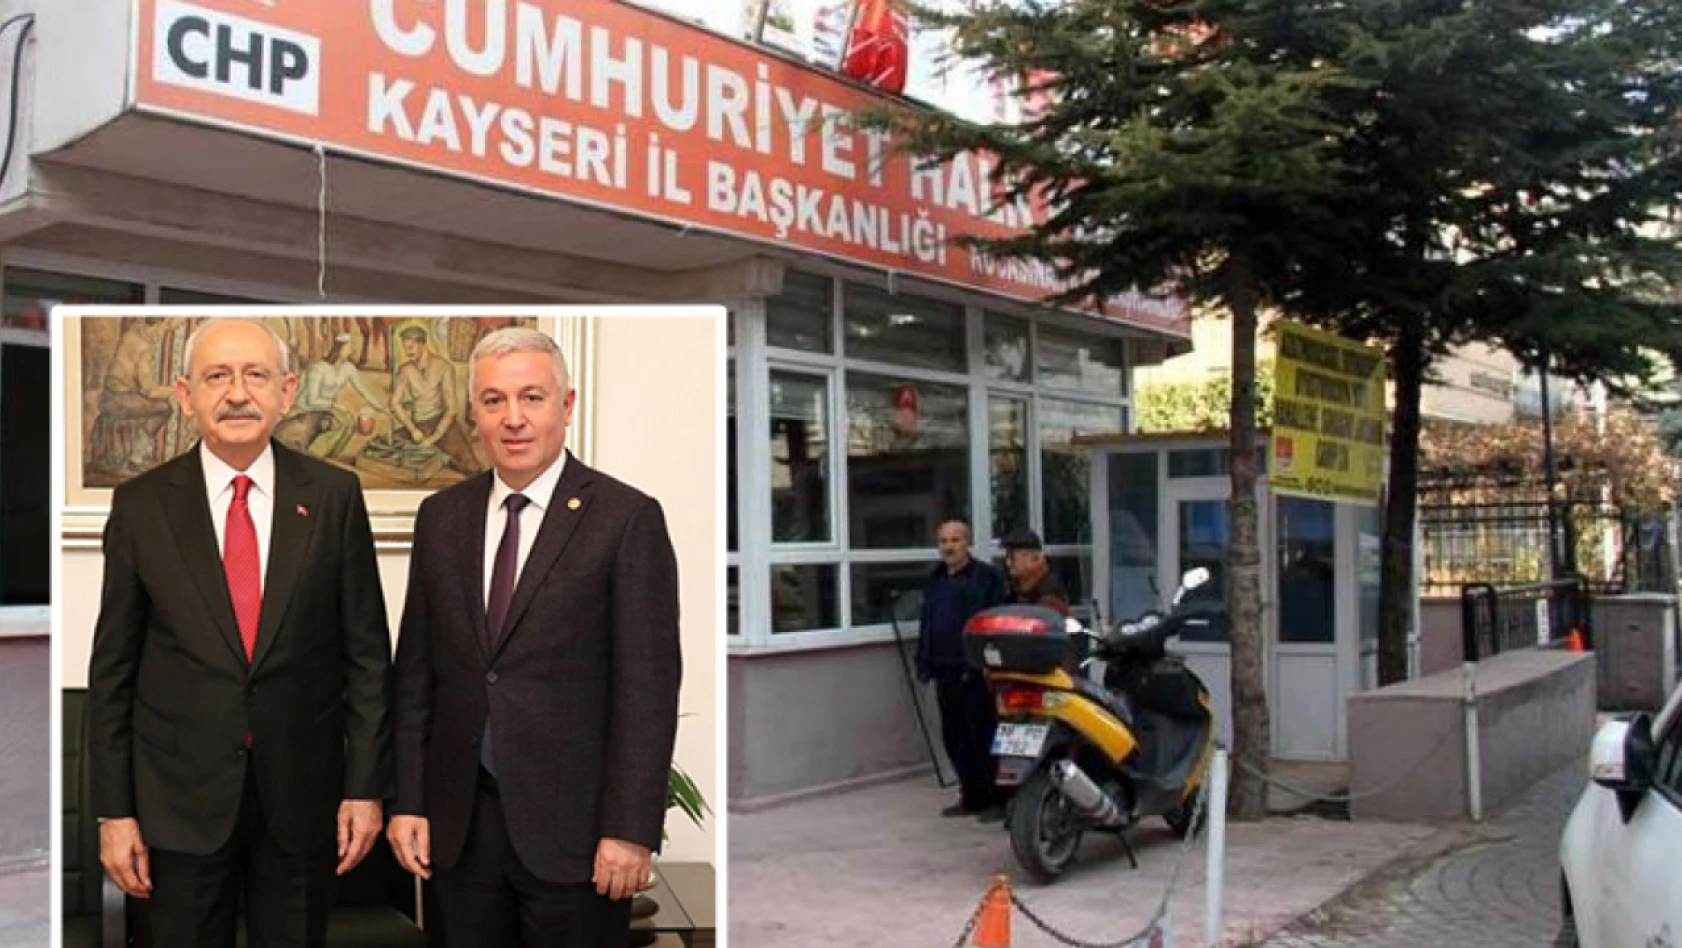 Çetin Arık yerel seçimlerde aday olacak iddiası – Kılıçdaroğlu ile görüştü mü?